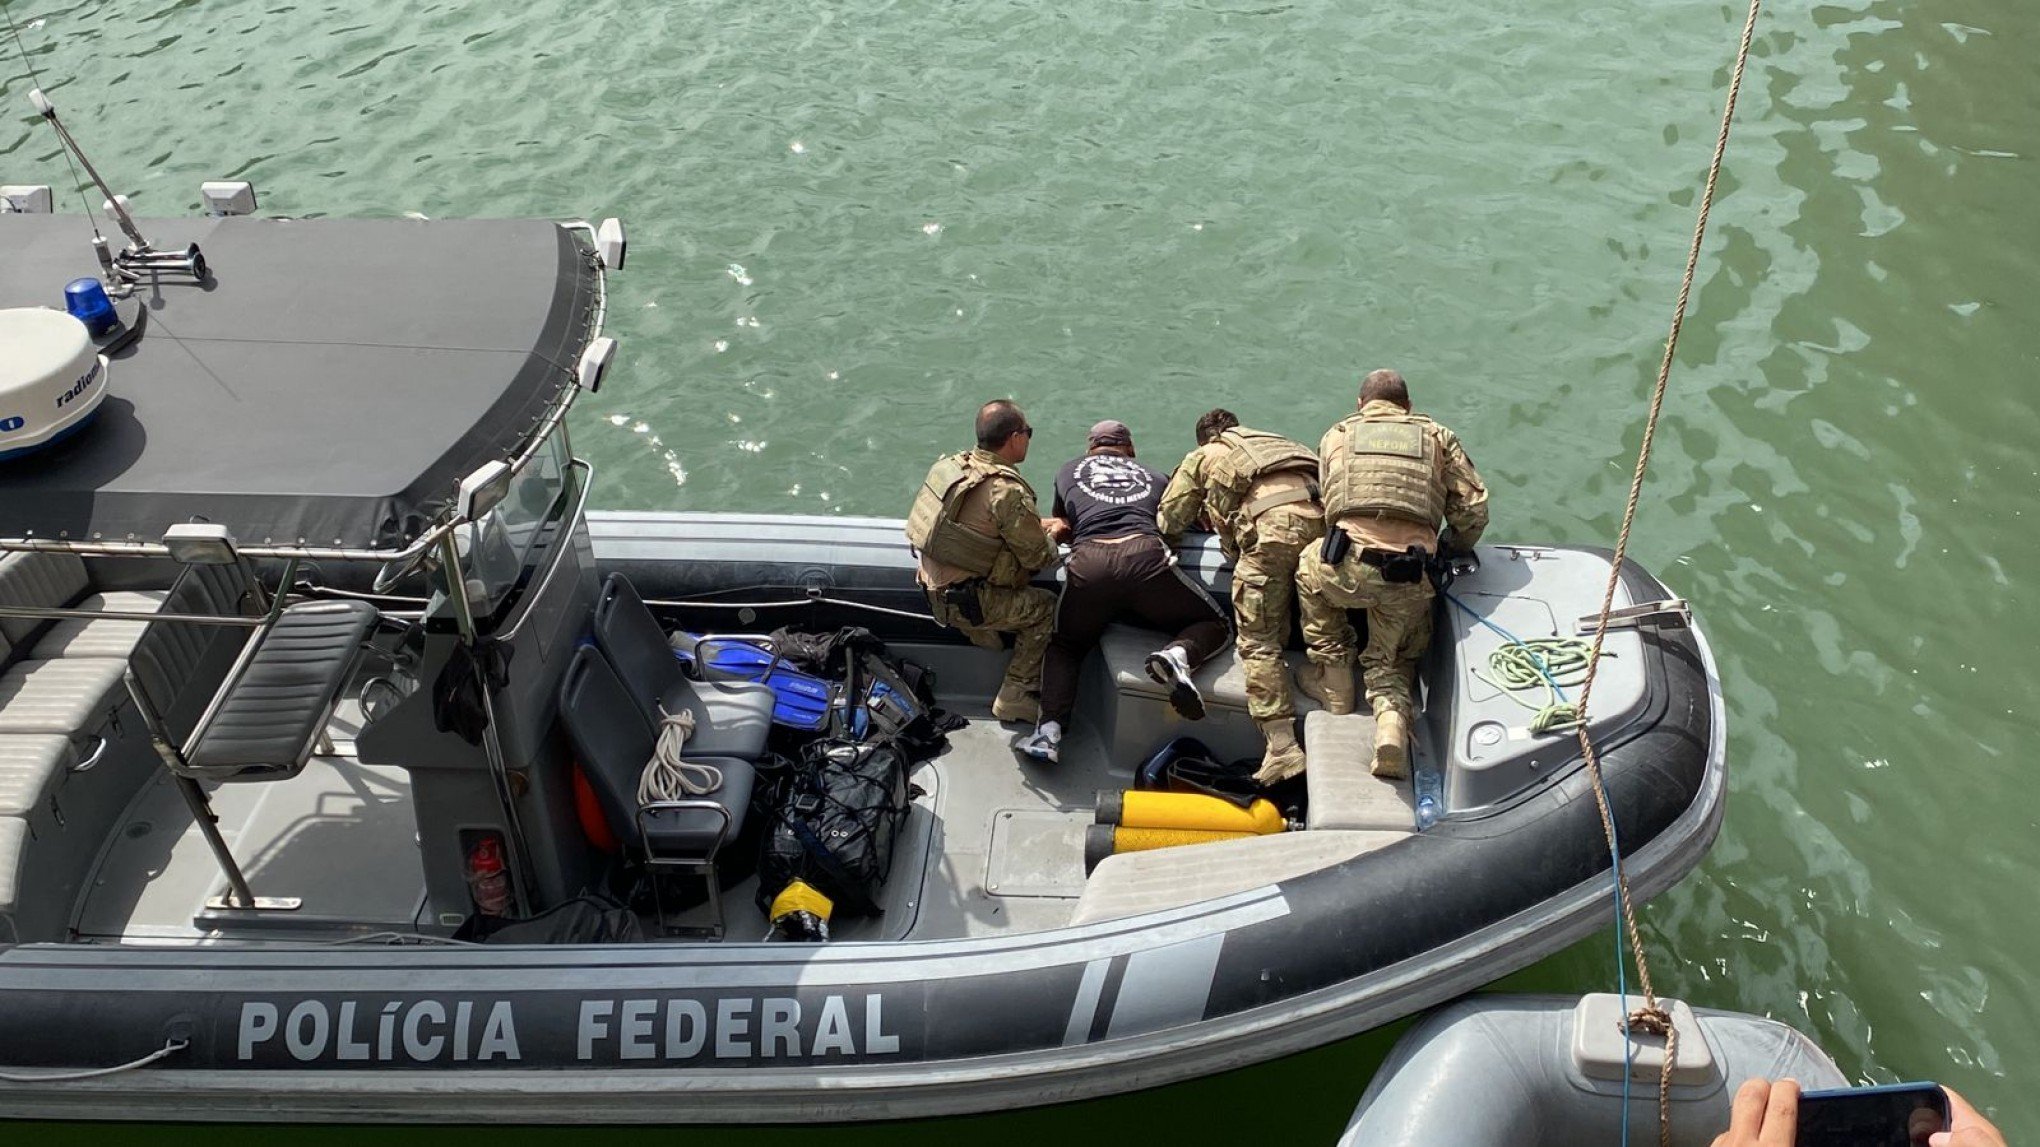 TRÁFICO INTERNACIONAL: Mergulhador que acessava casco de navio para esconder drogas é descoberto pela PF